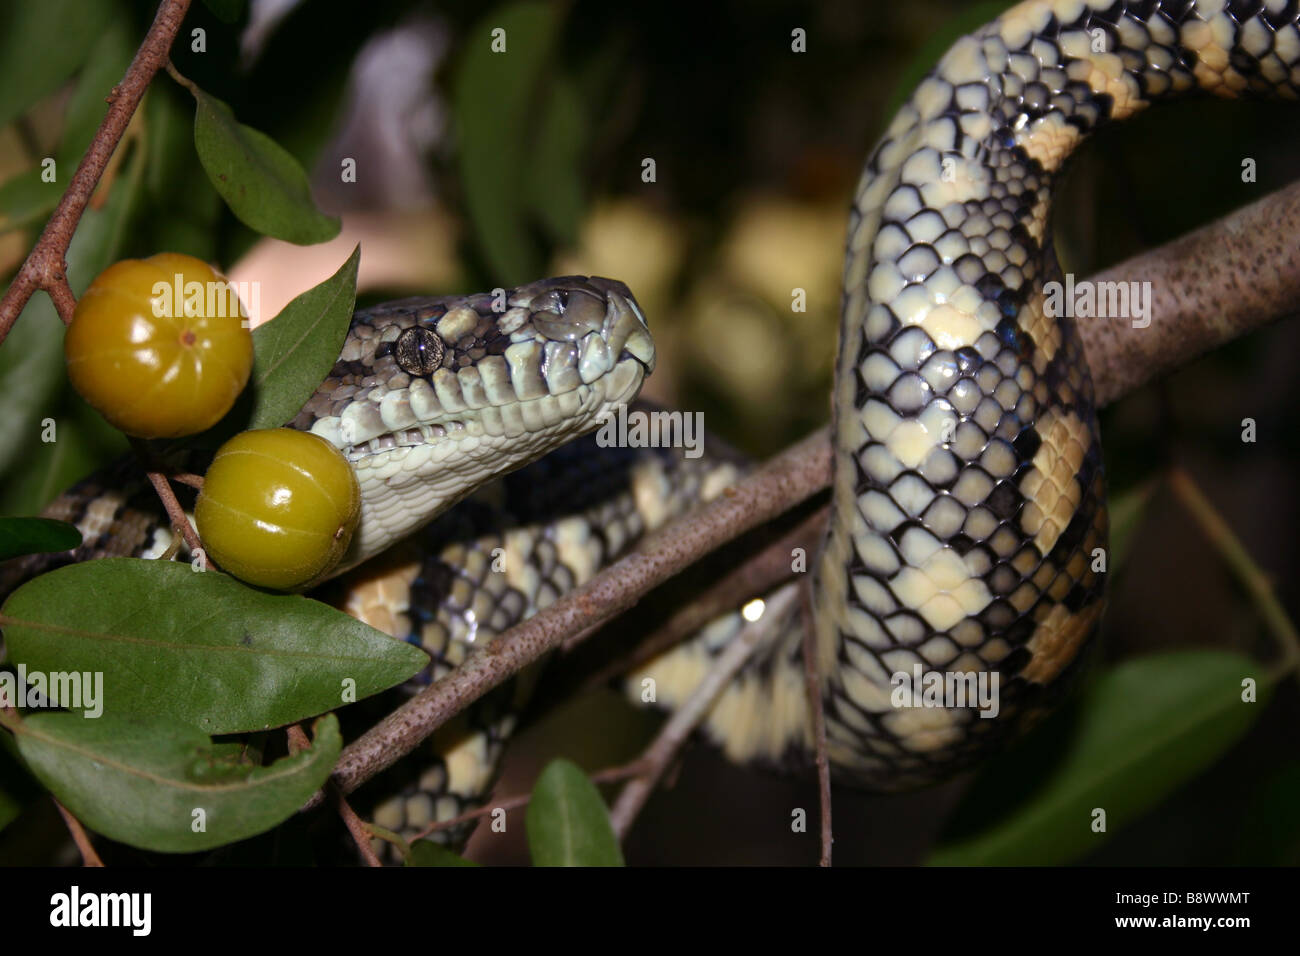 Australian Carpet Python (Morelia spilota mcdowelli) Stock Photo